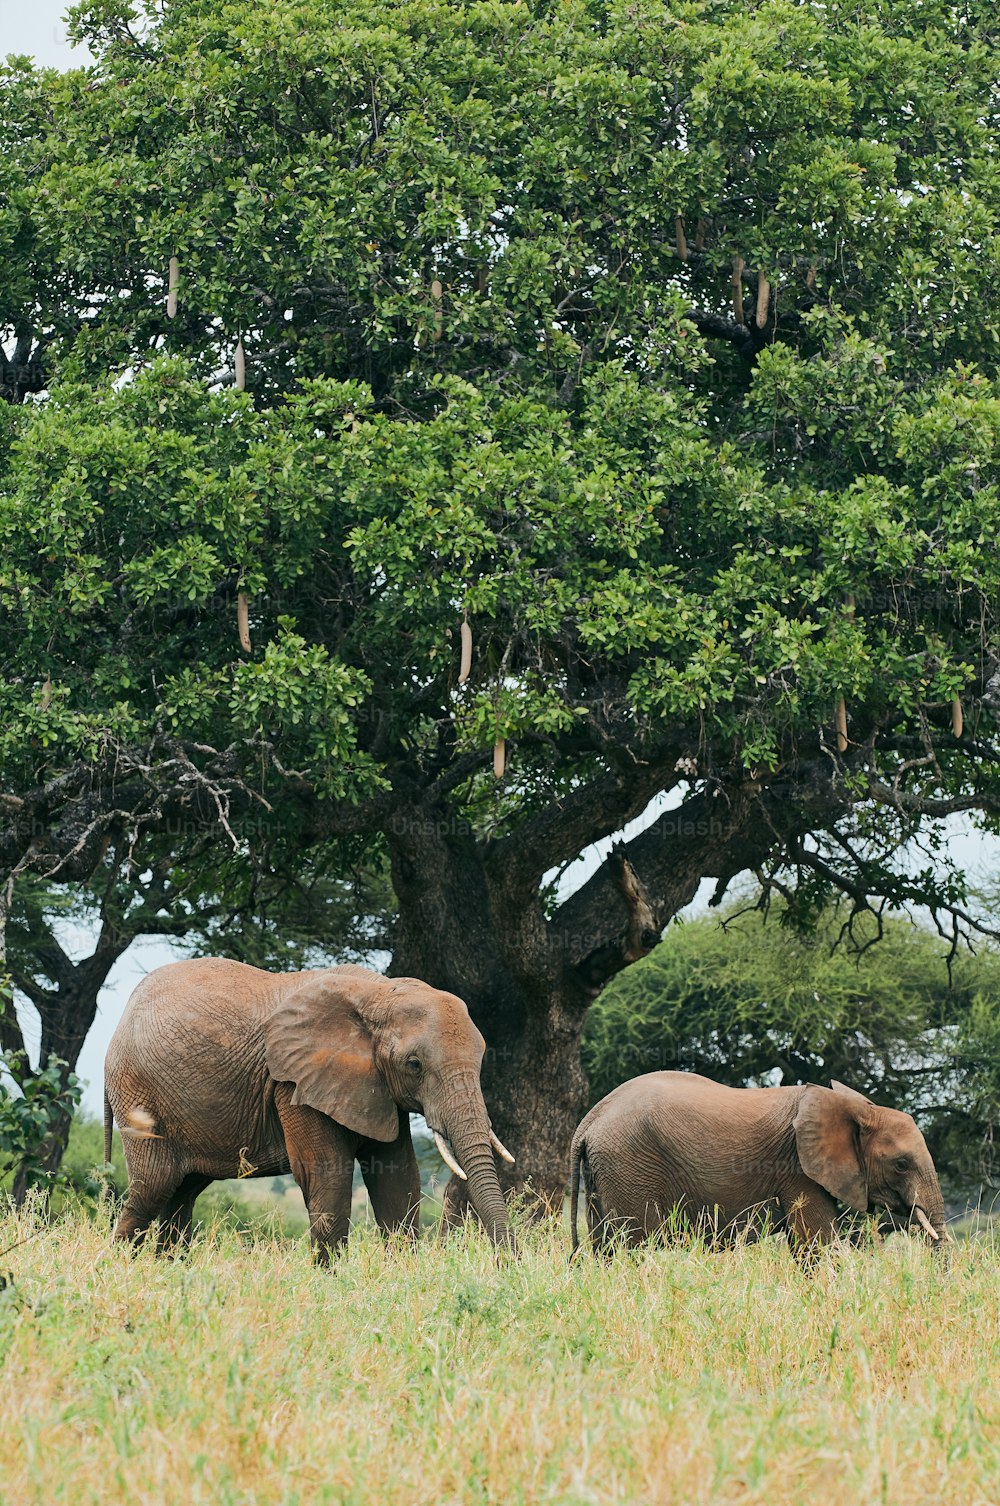 タンザニアのサバンナを歩く2頭のアフリカゾウ(Loxodonta africana)。背景には大きな木。